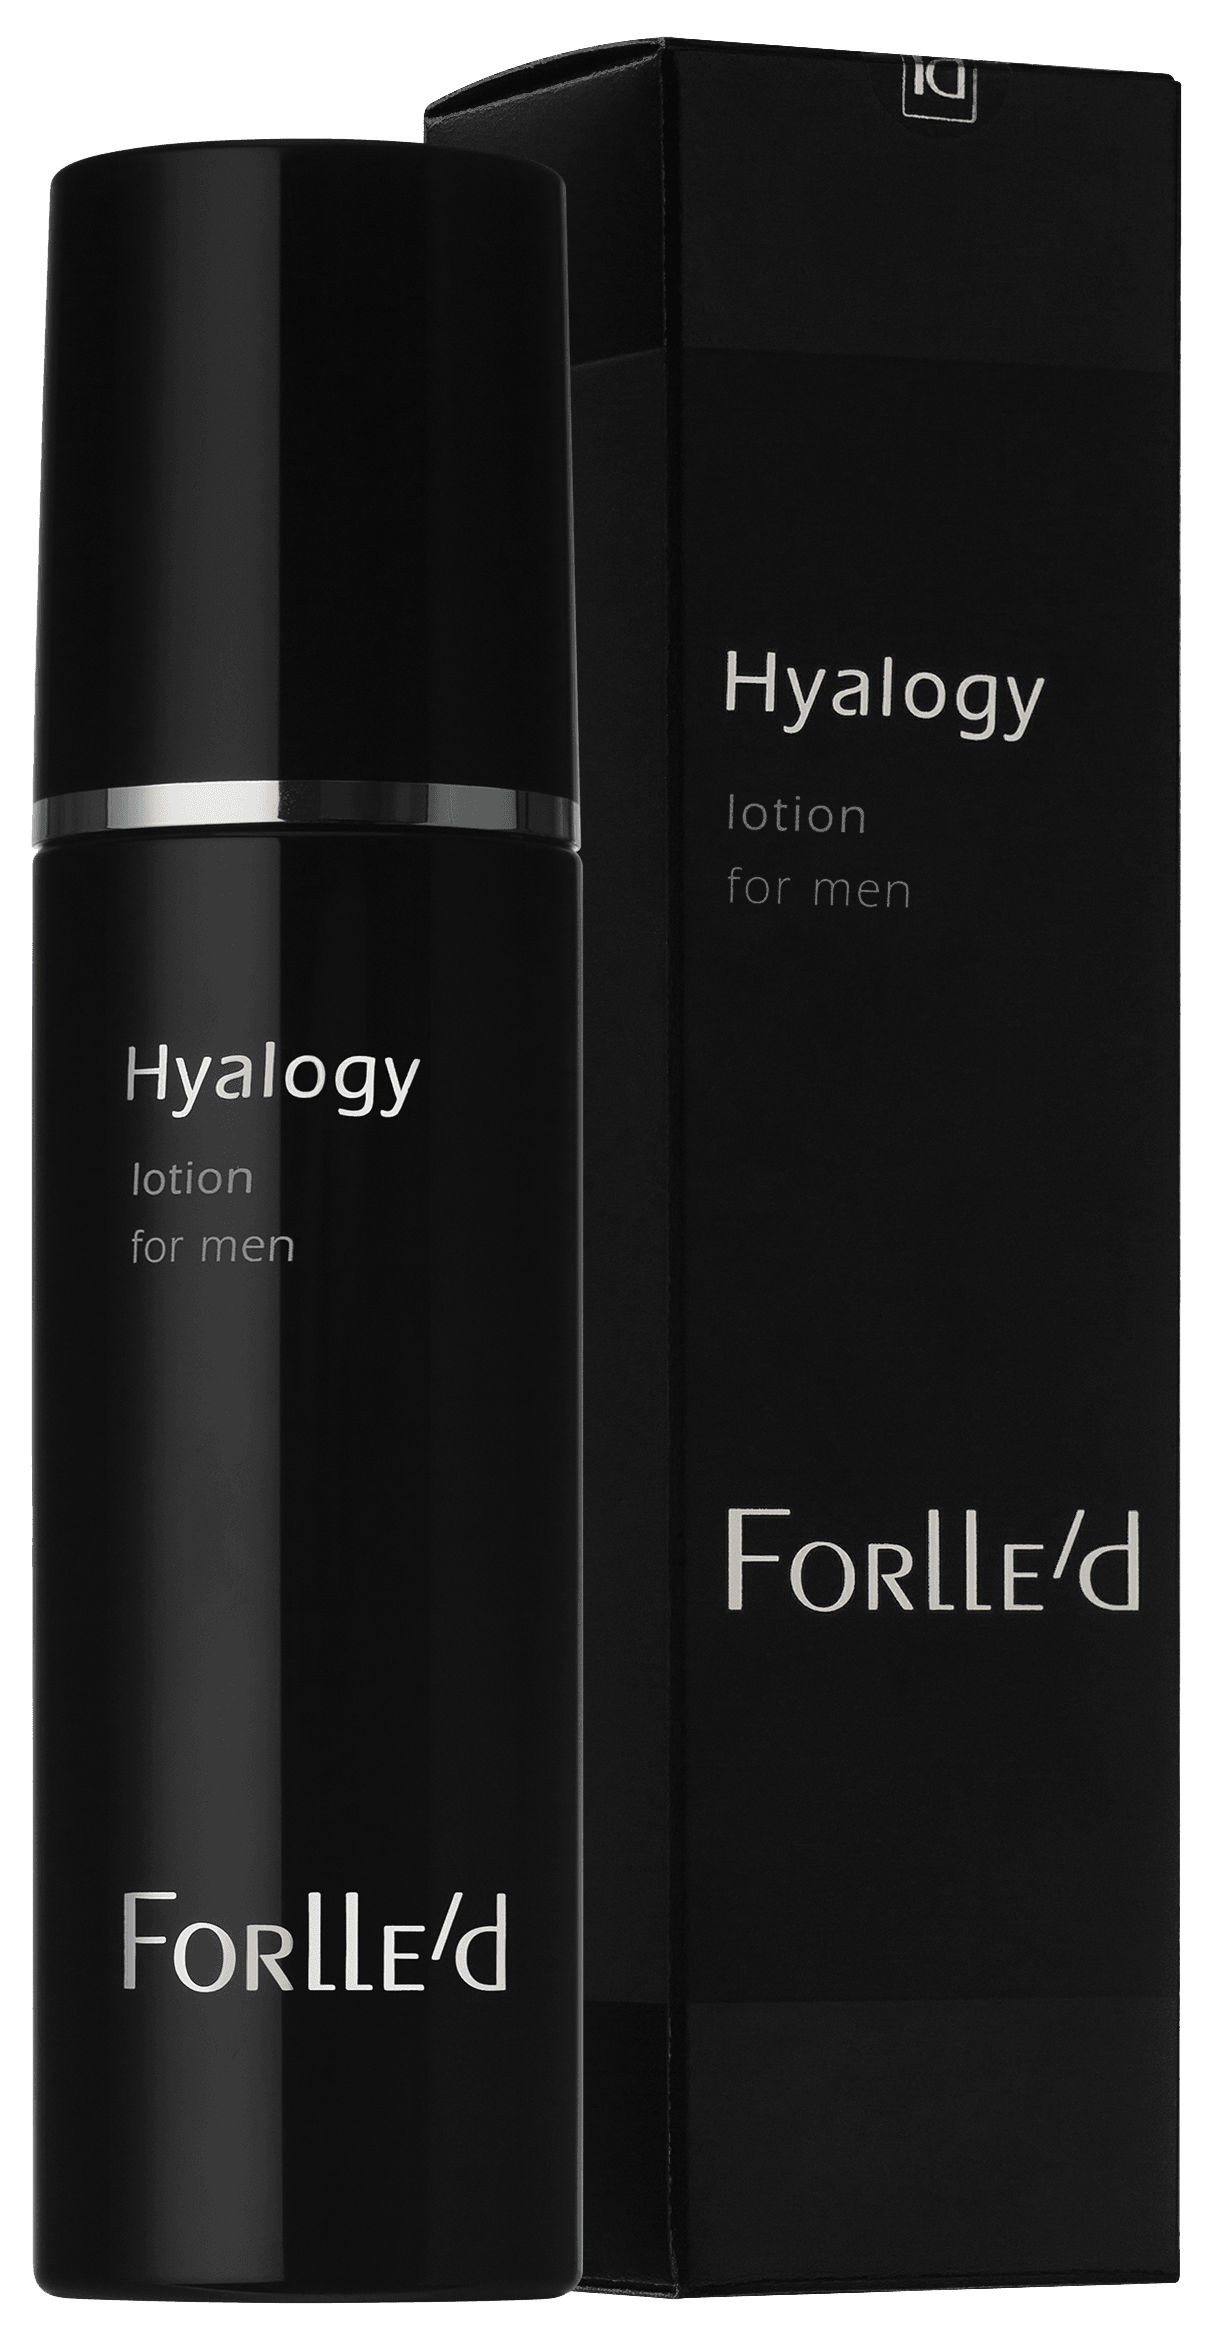 Forlled Hyalogy Lotion for Men 100 ml